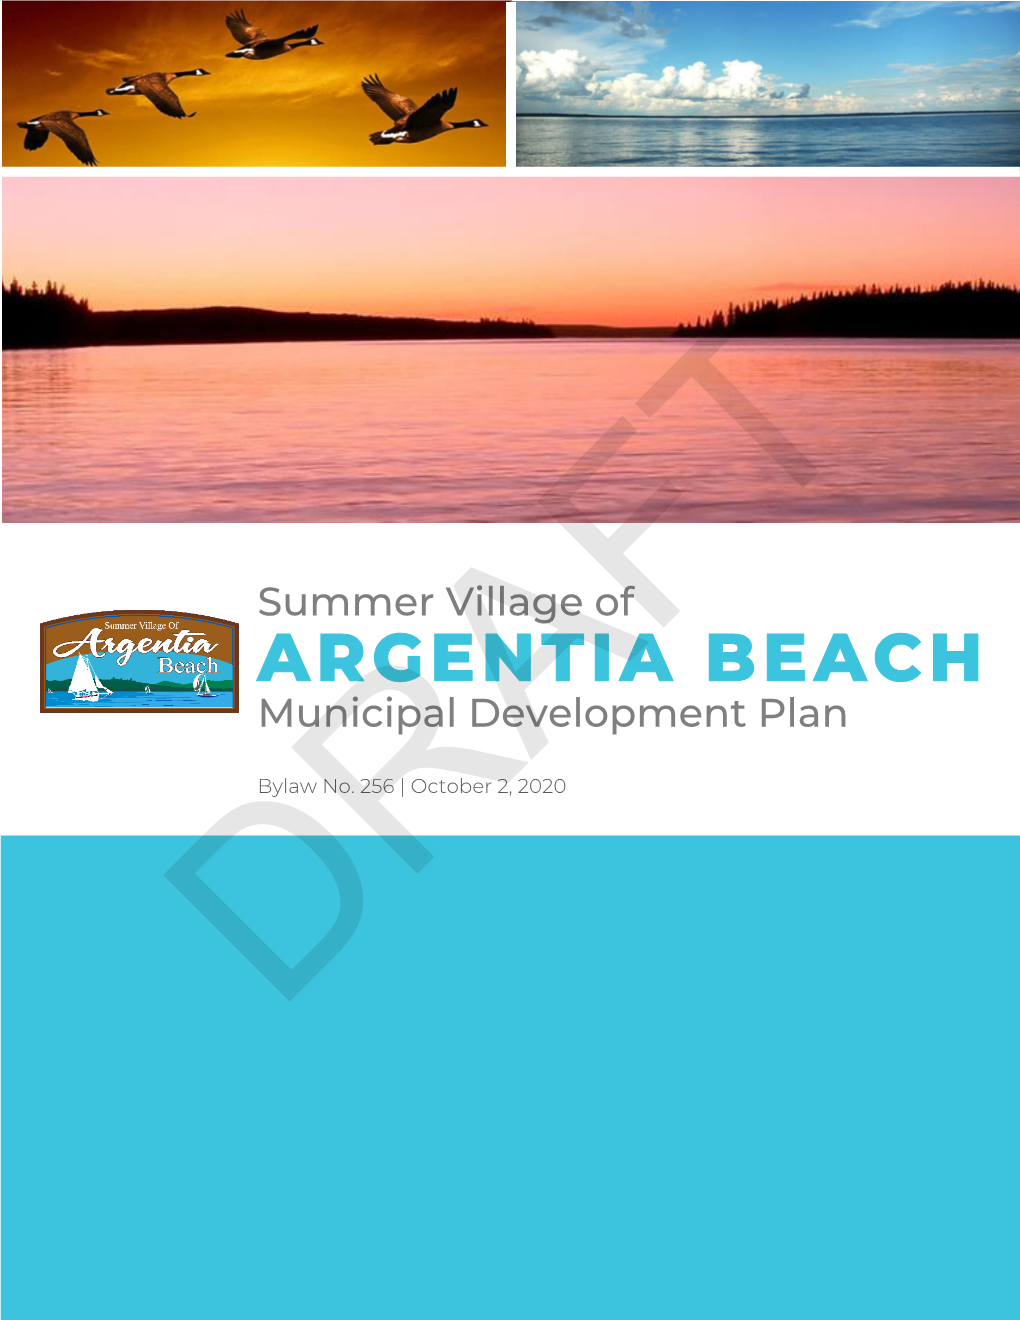 ARGENTIA BEACH Municipal Development Plan